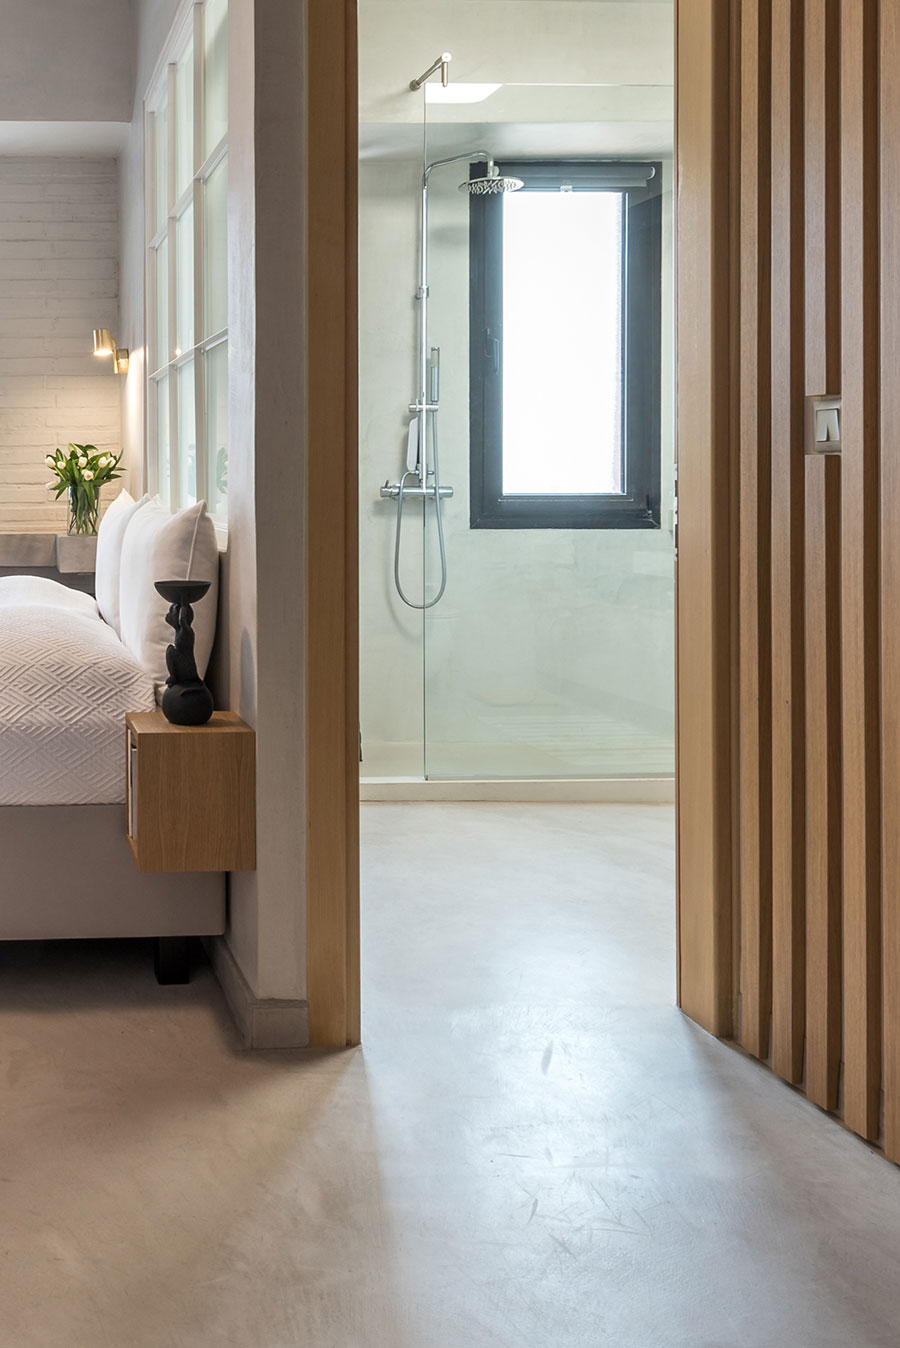 Slaapkamer suite met betonlook en hout